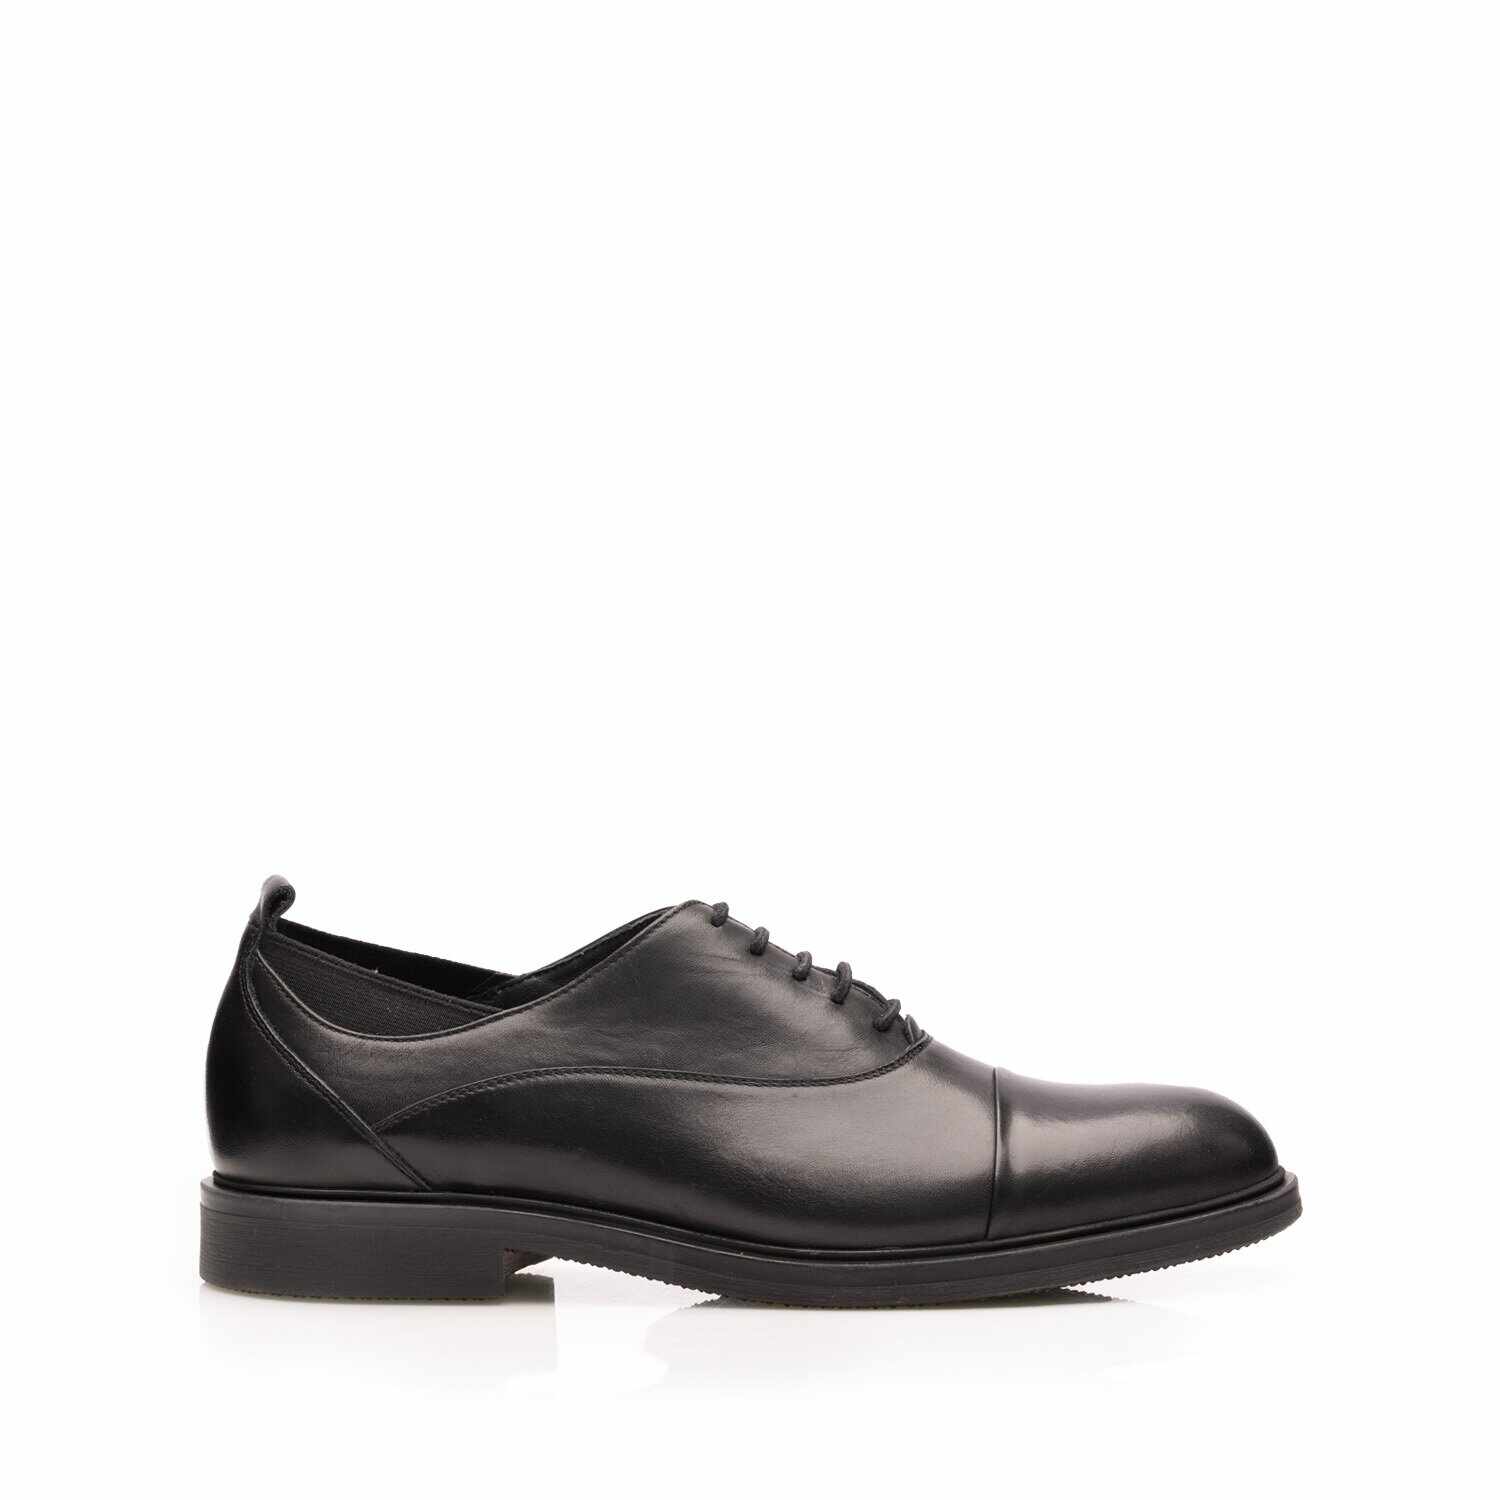 Pantofi casual bărbați din piele naturală, Leofex - Mostră 603 Negru Box